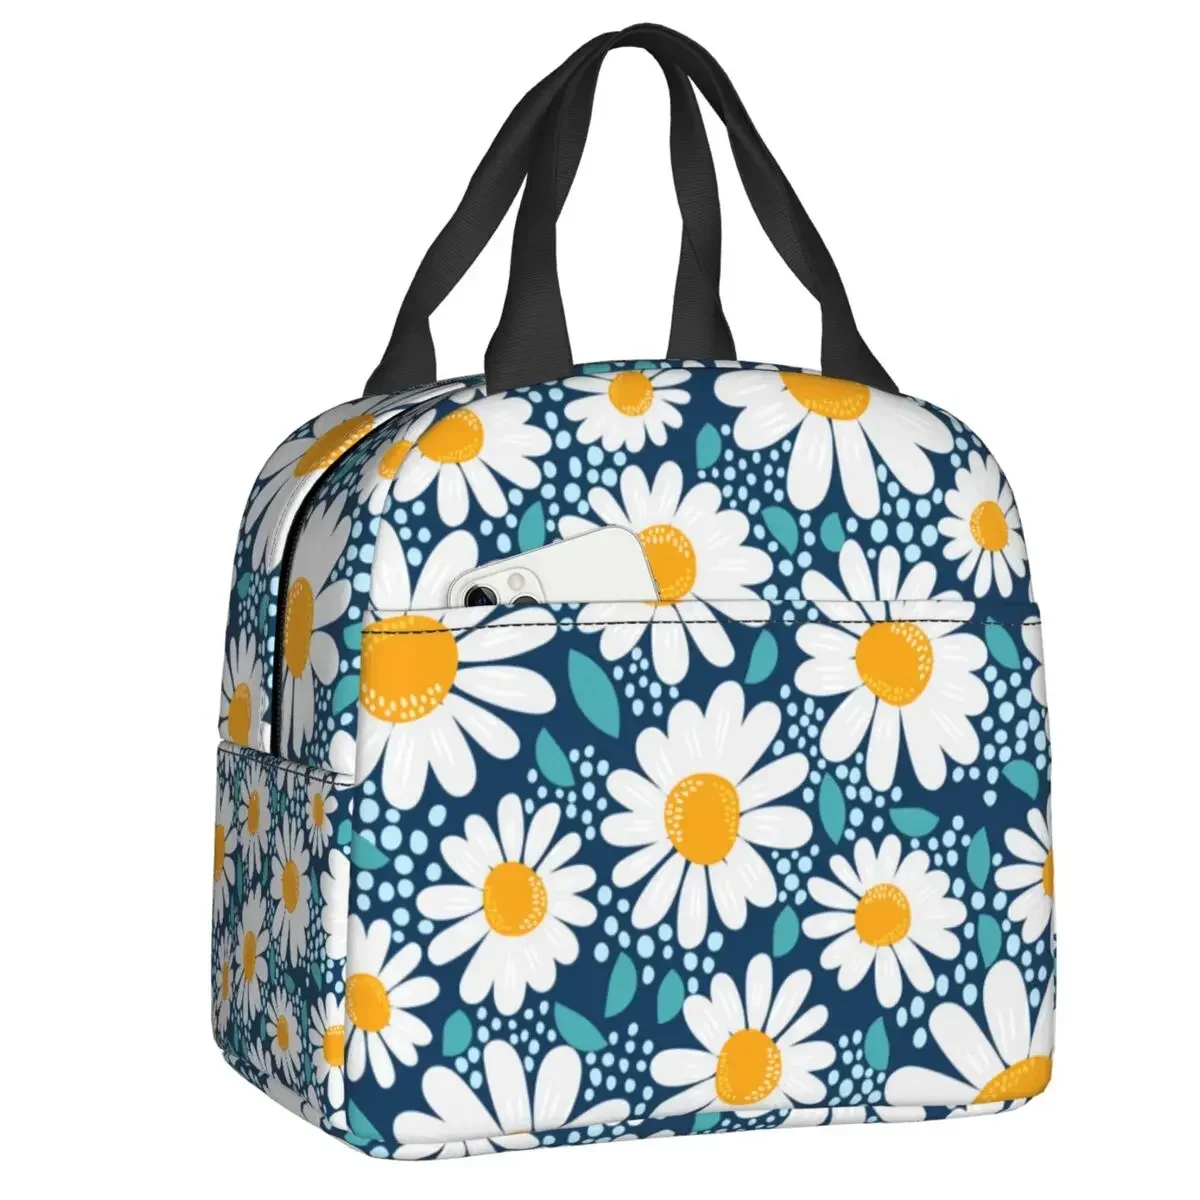 

Индивидуальная сумка для ланча с цветочным принтом маргаритки для мужчин и женщин, теплоизолированный Ланч-бокс для школы, работы, путешествий, пикника, сумки-тоуты для еды